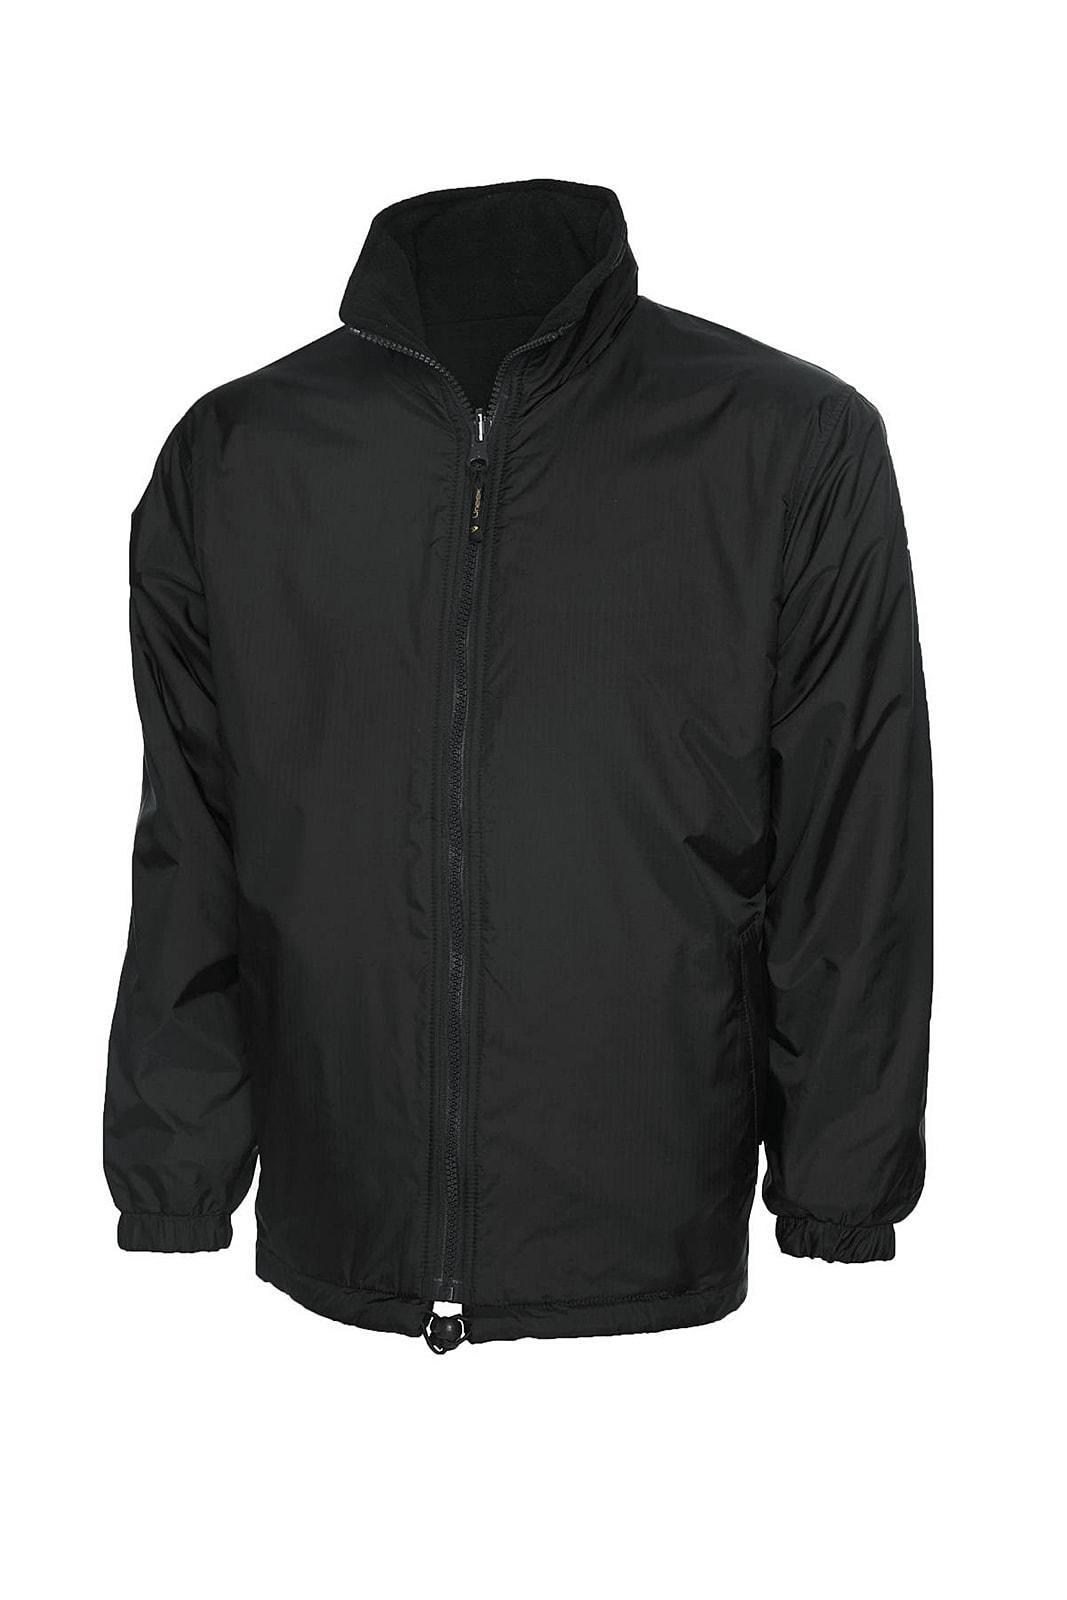 Uneek Premium Reversible Fleece Jacket | UC605 | Workwear Supermarket